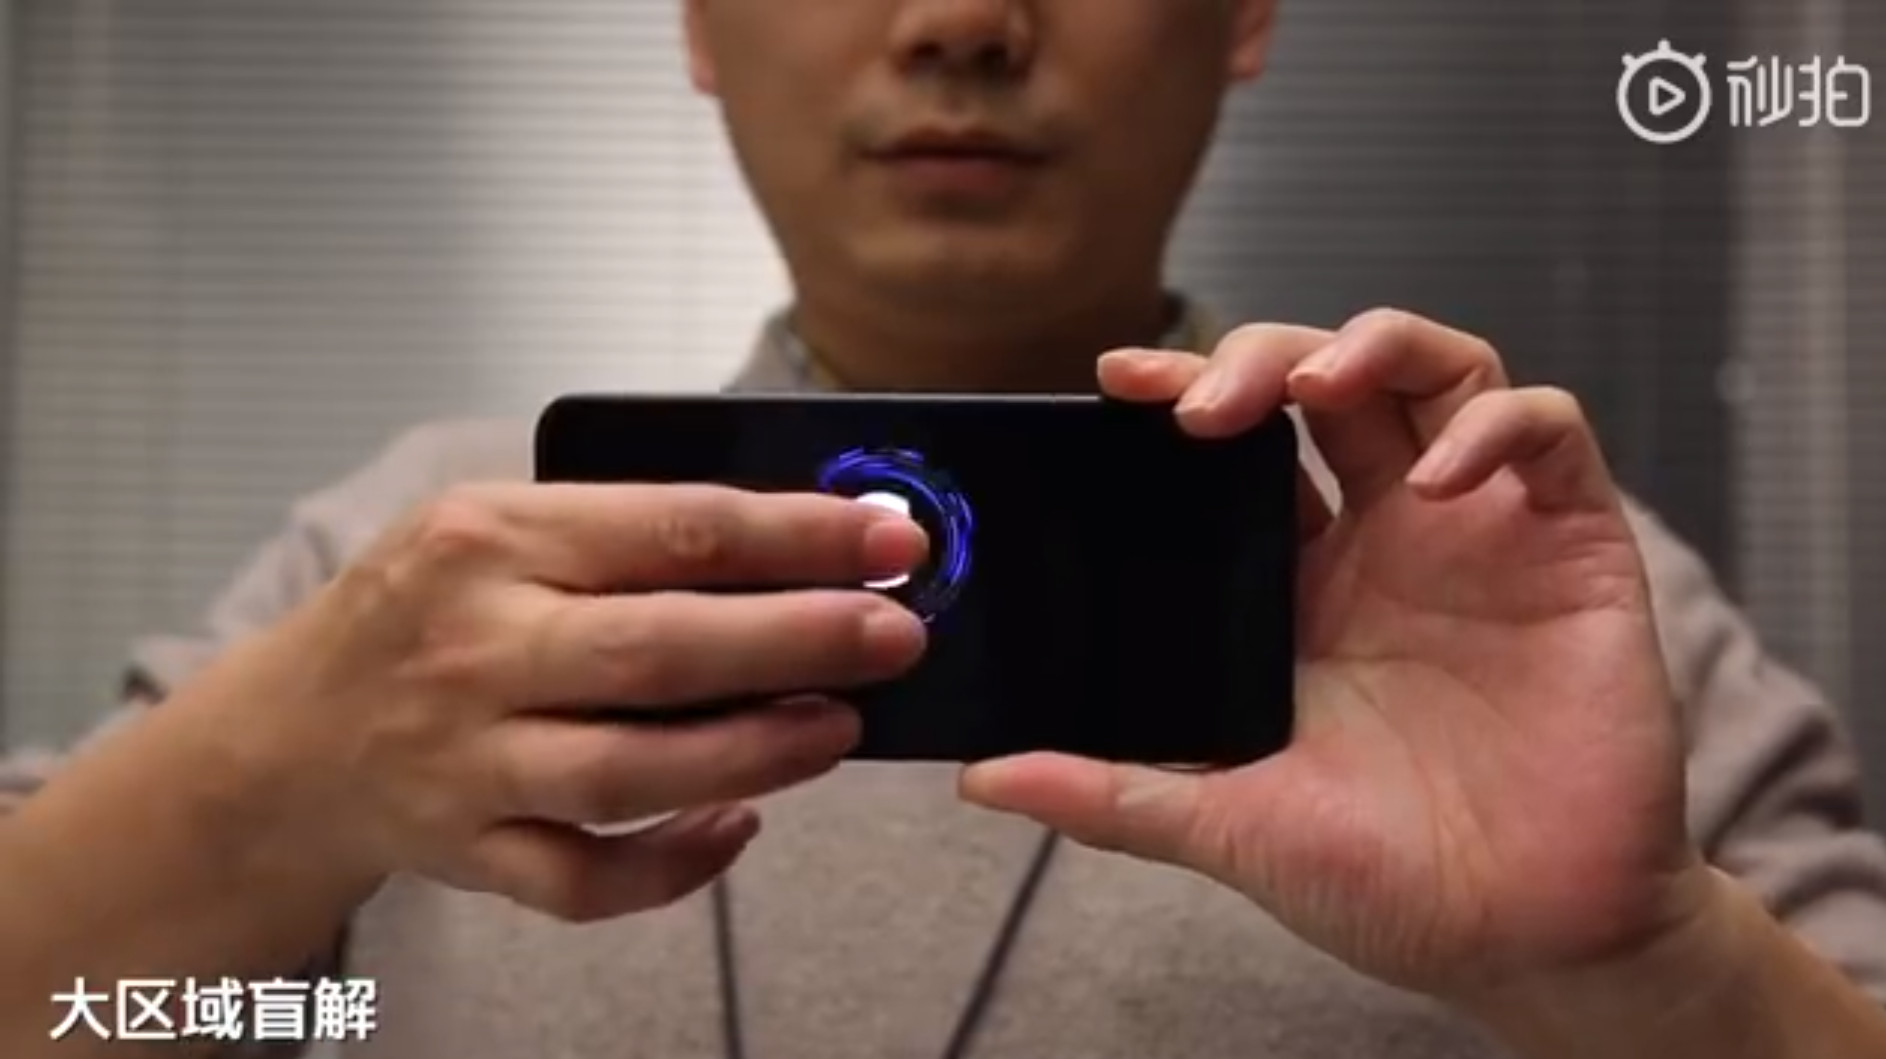 小米手机上的新一代发射指纹传感器。